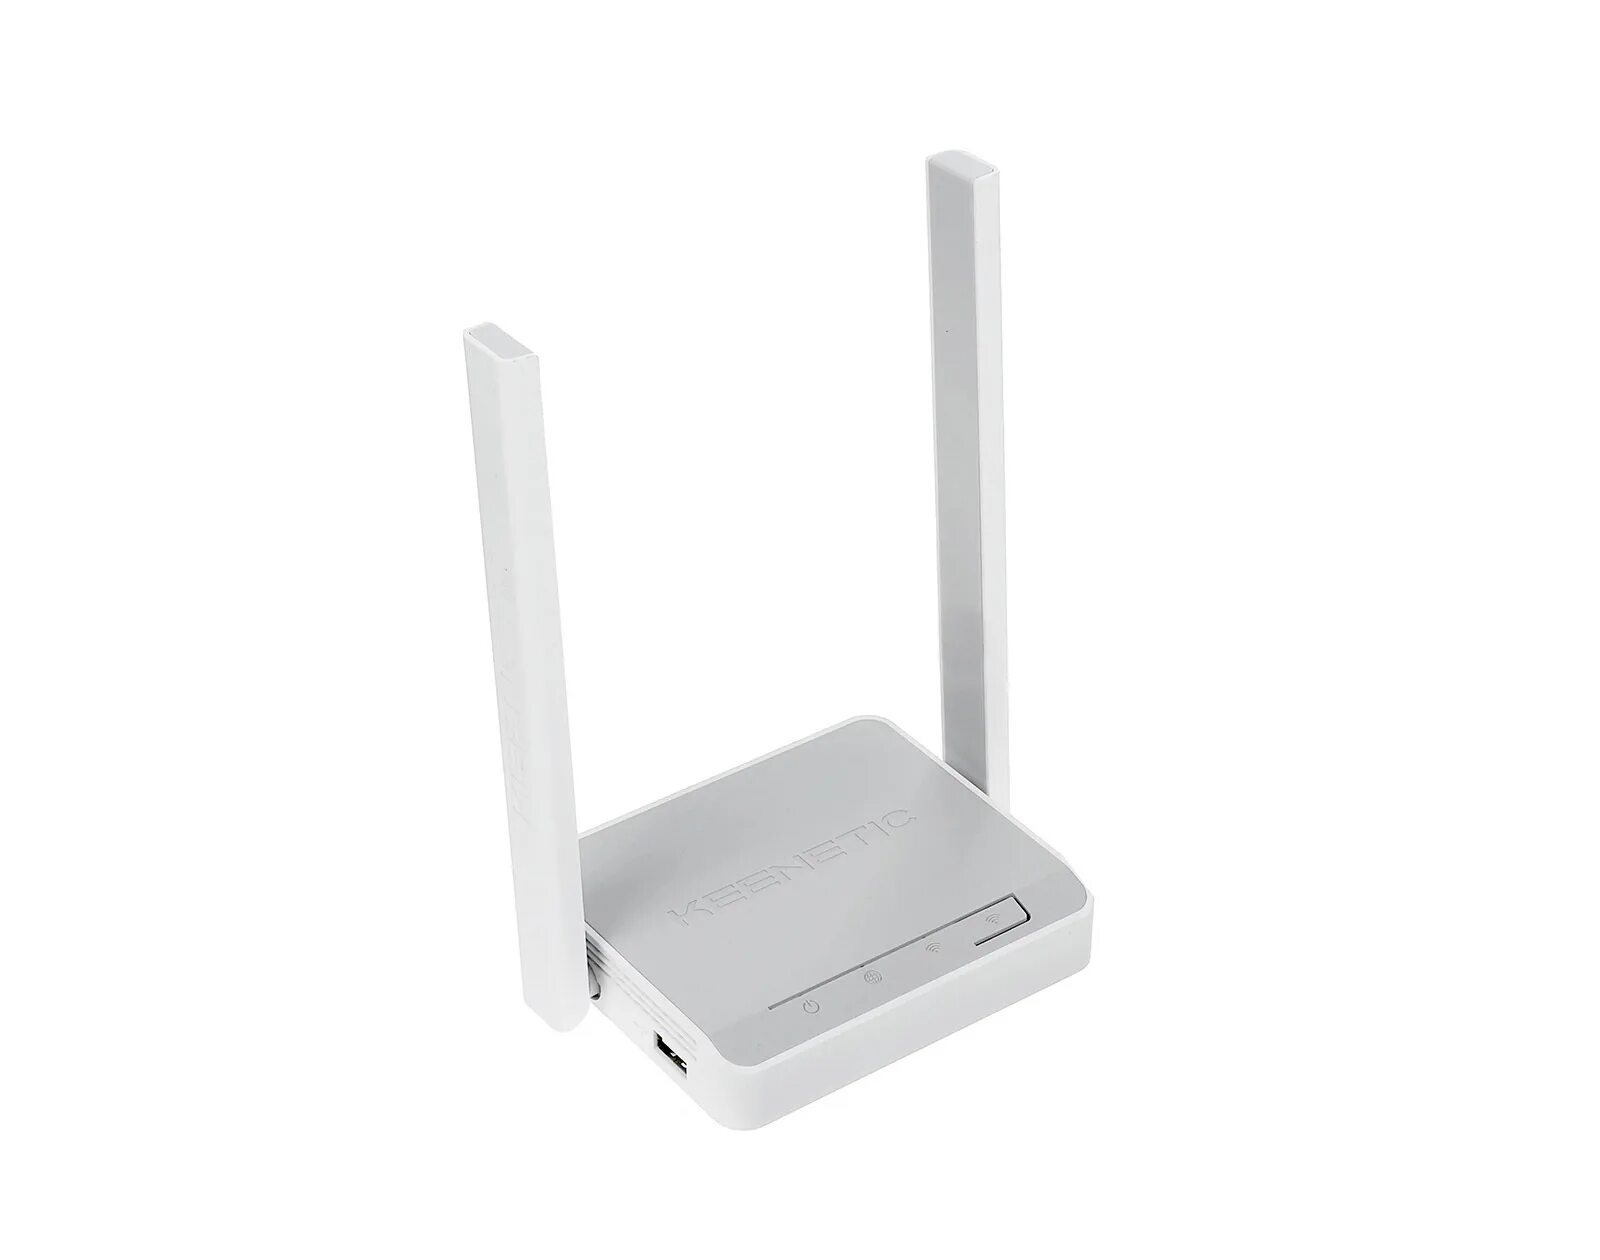 Wi-Fi роутер Keenetic 4g (KN-1211). Роутер Keenetic 4g KN-1210. Wi-Fi роутер Keenetic 4g n300. Wi-Fi роутер ZYXEL Keenetic 4g. Купить роутер keenetic 4g